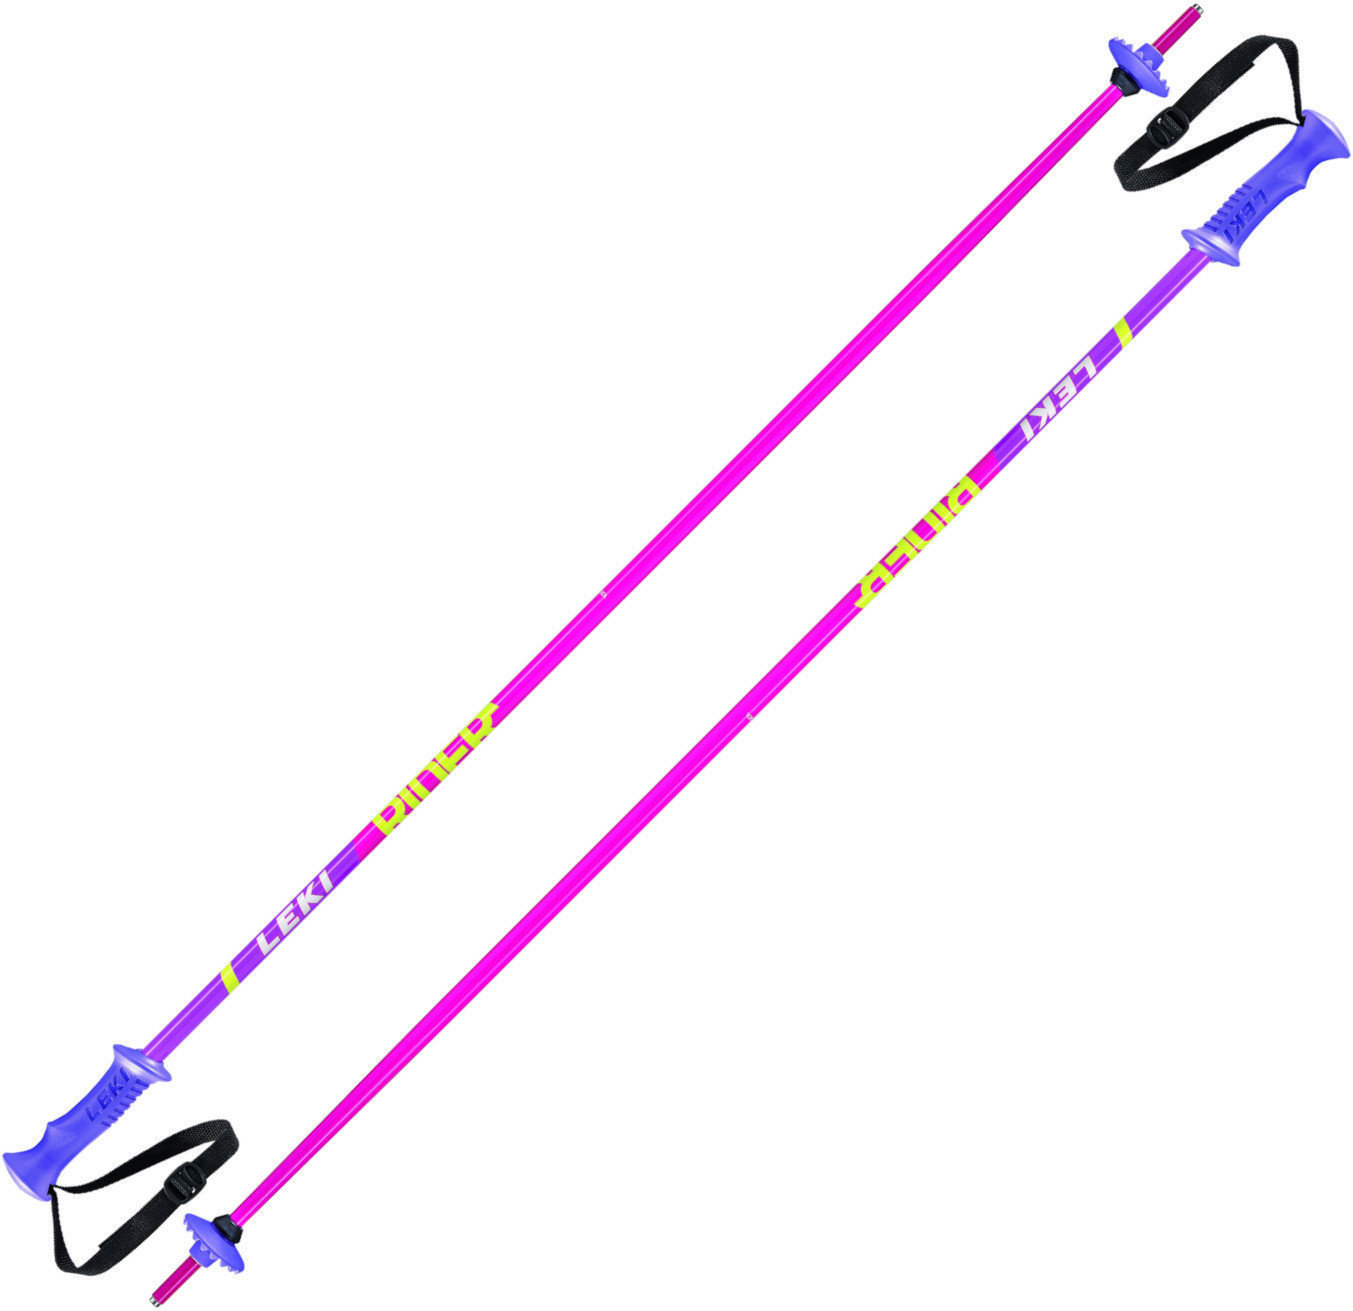 Ski-stokken Leki Rider Pink/White/Green/Lilac 105 cm Ski-stokken